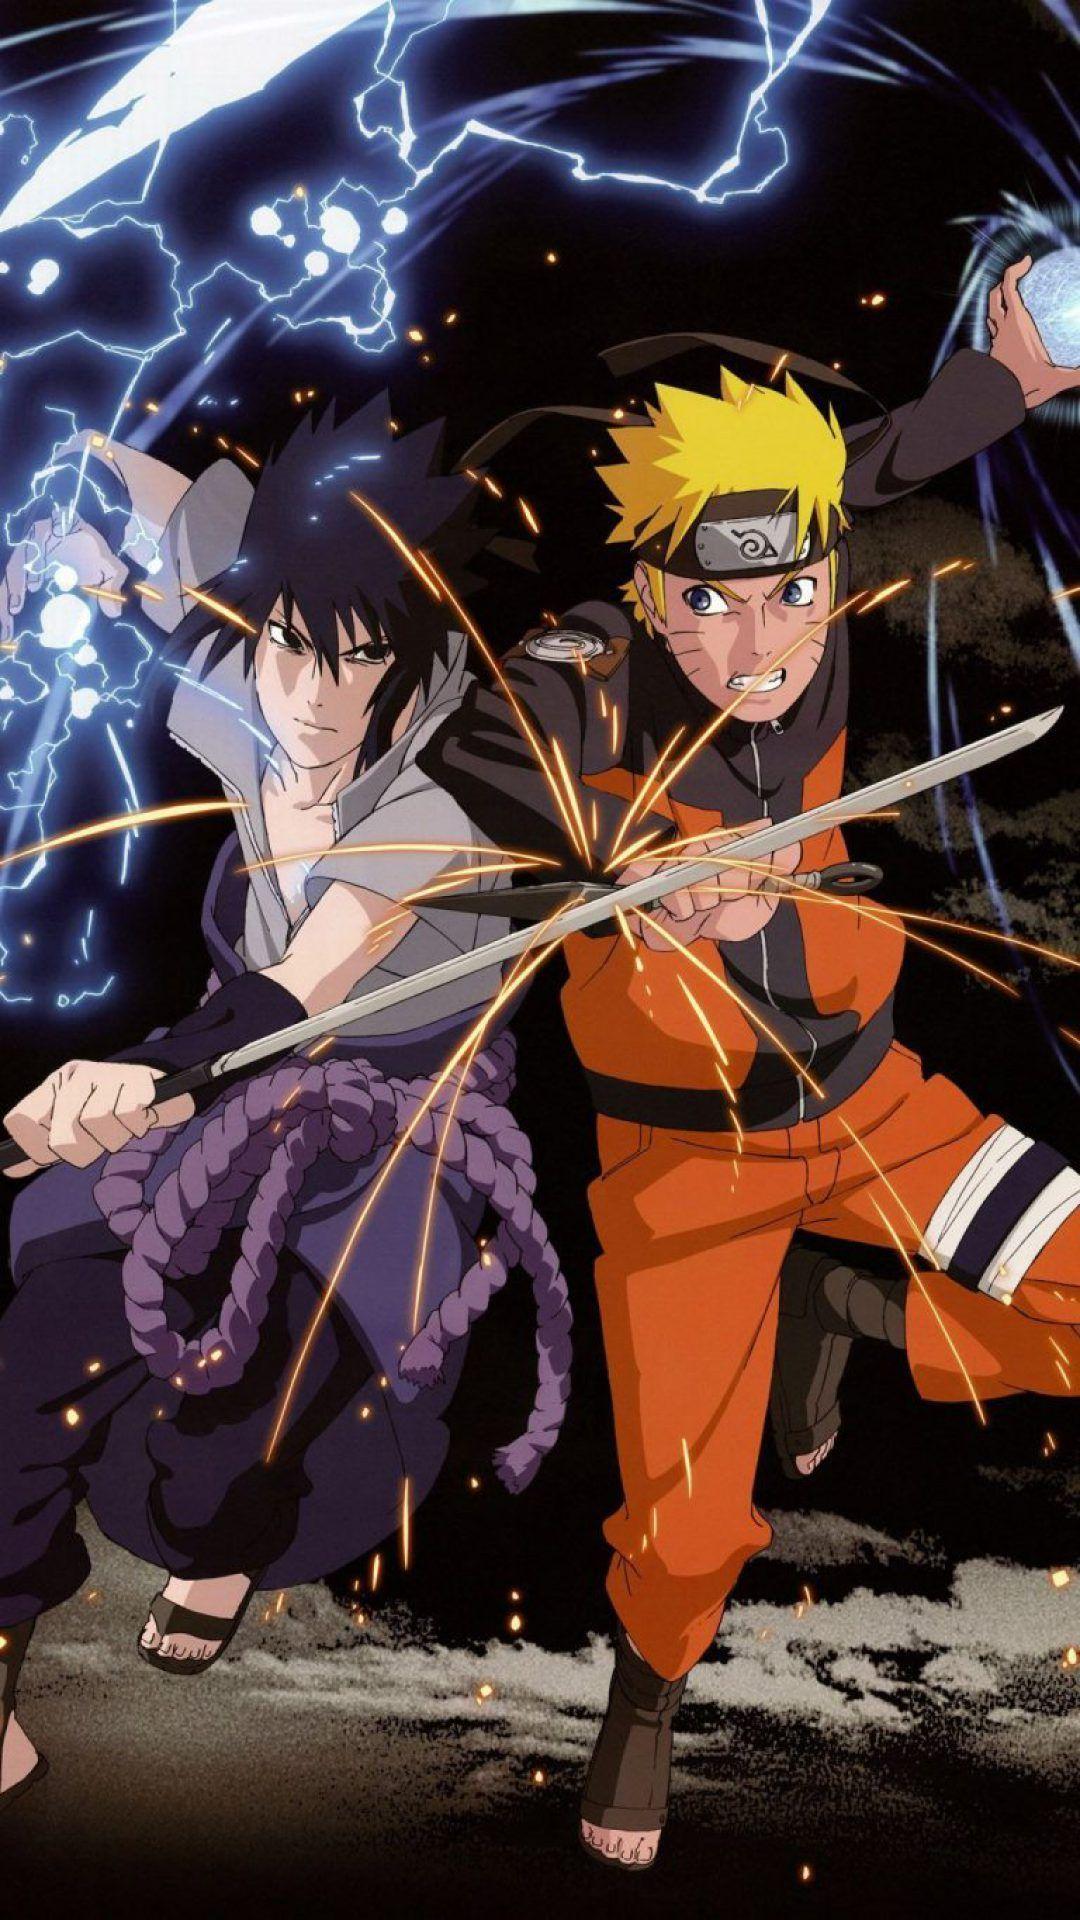 Hình nền Naruto Sasuke là sự kết hợp hoàn hảo giữa hai nhân vật đầy hấp dẫn của bộ truyện tranh, đem lại không gian làm việc và giải trí cực kỳ quyến rũ. Hãy ngắm nhìn hình nền này để cảm nhận sức hút của sự phối hợp giữa Naruto và Sasuke.